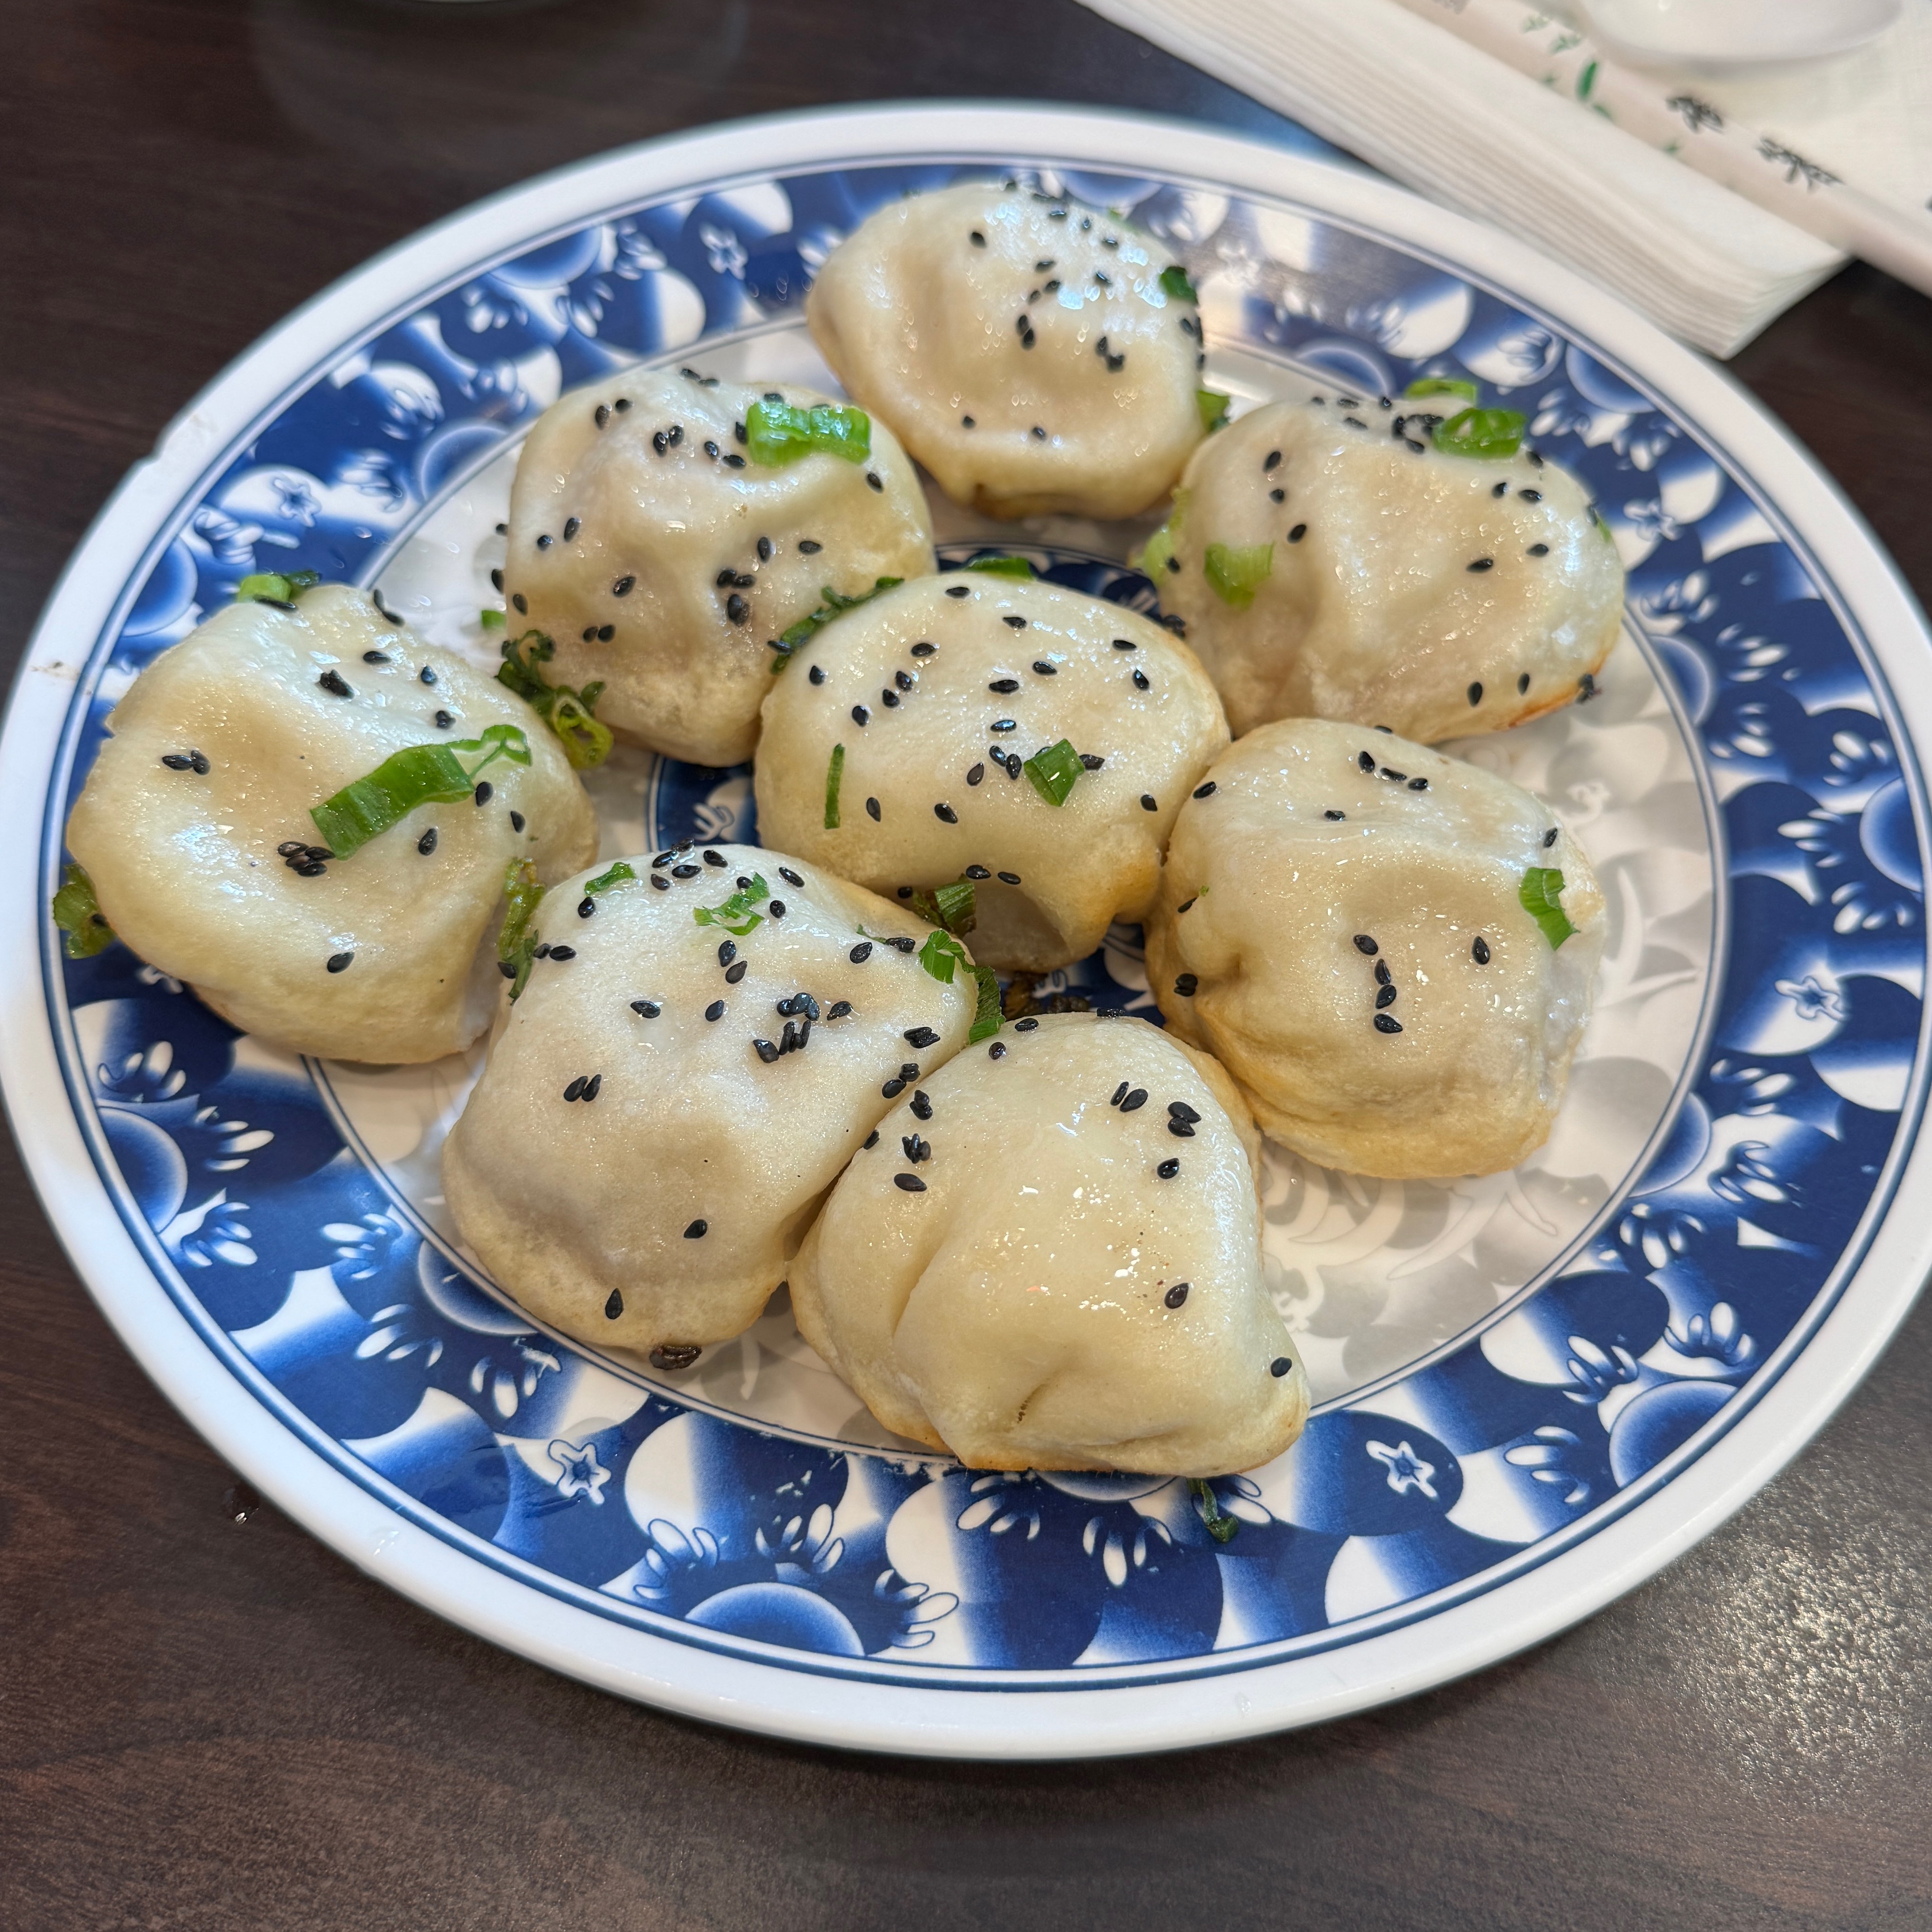 Shen Jiang Bao (Pan Fried Dumpling) $12 at Kang Kang Food Court - Shau May on #foodmento http://foodmento.com/place/10588